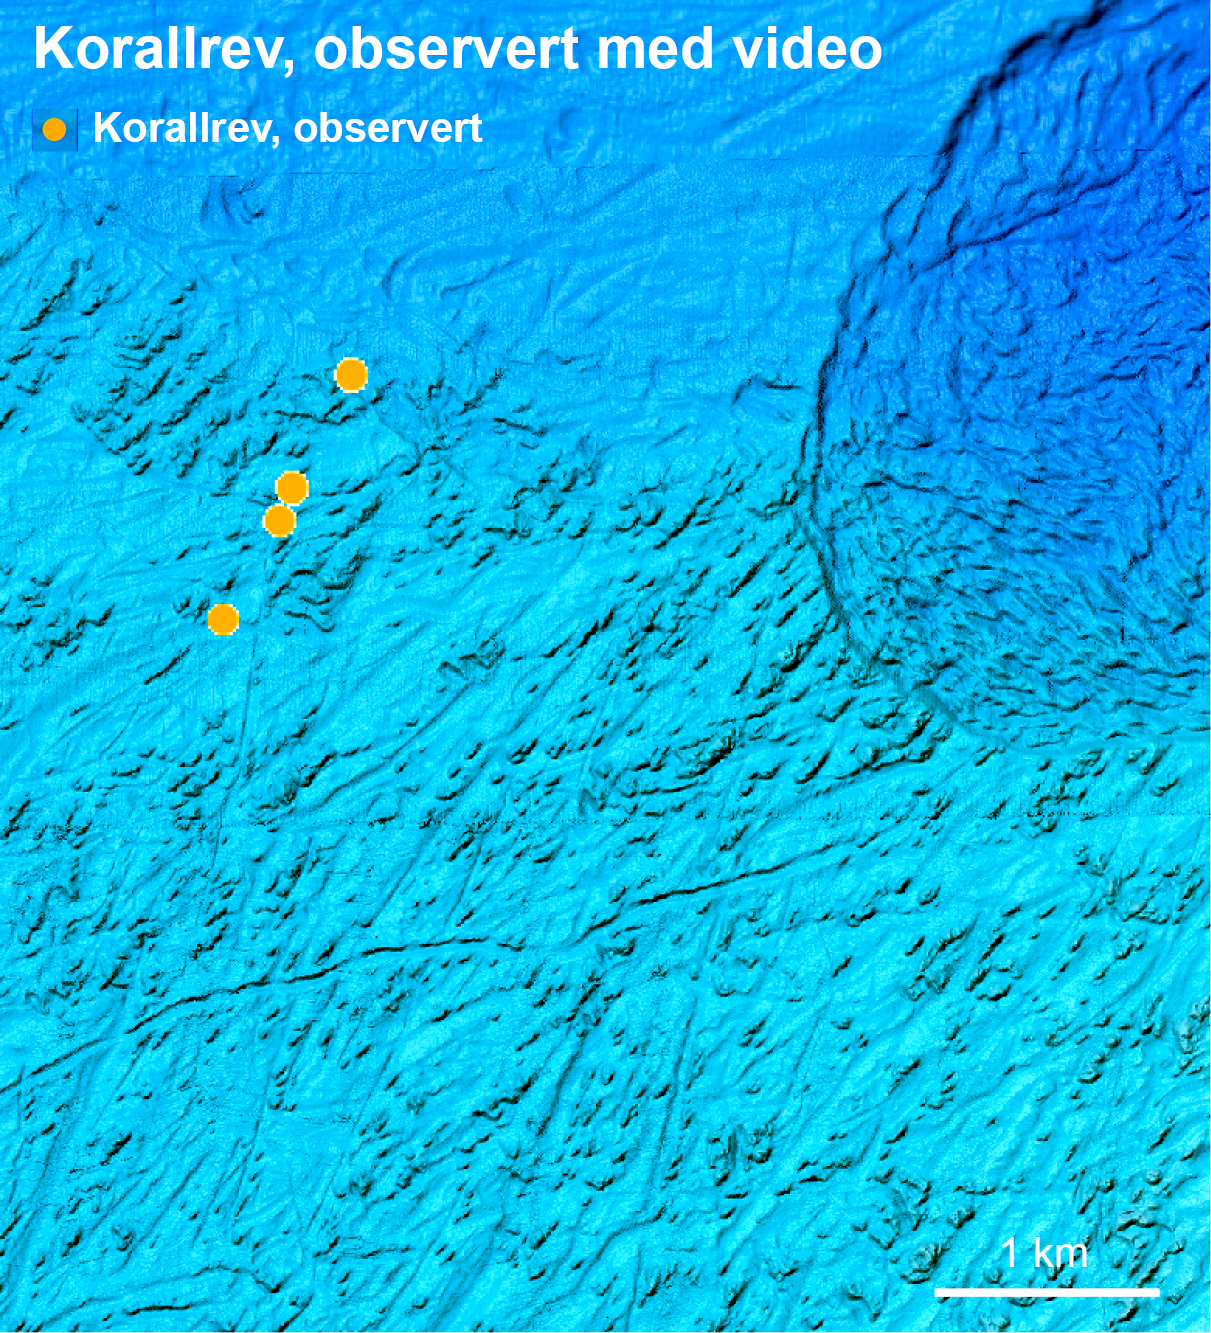 Fire observerte korallrev til venstre, mens de sannsynlige forekomstene av korallrev til høyre er beregnet til 1011 rev. Illustrasjonen er hentet fra Aktivneset vest av Ålesund.